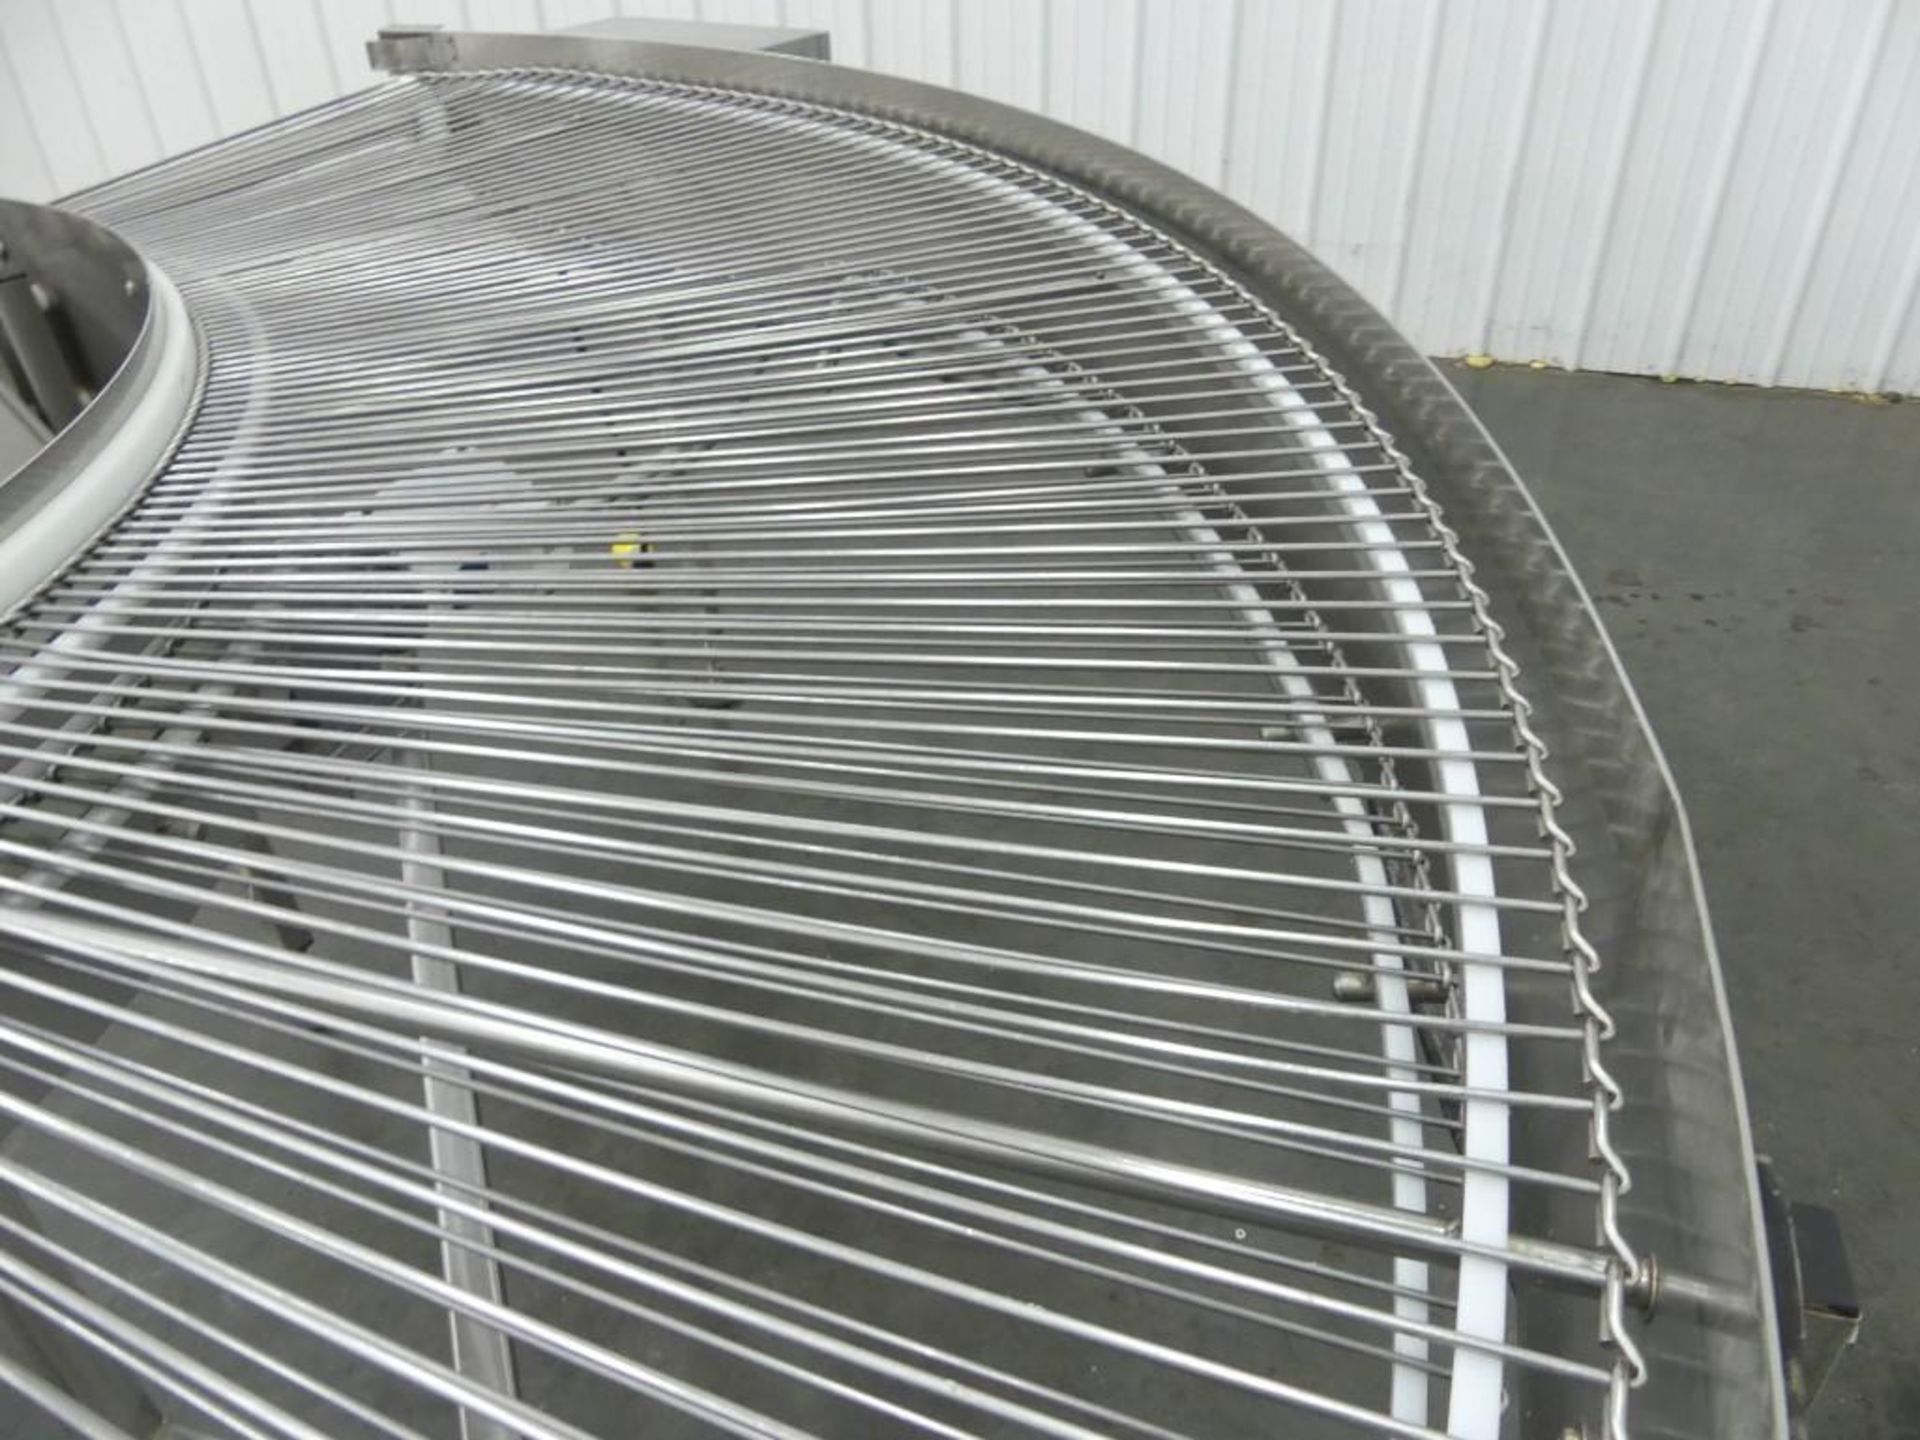 Belshaw Steel Wire Conveyor 30" W 180 Degree Turn - Image 4 of 10